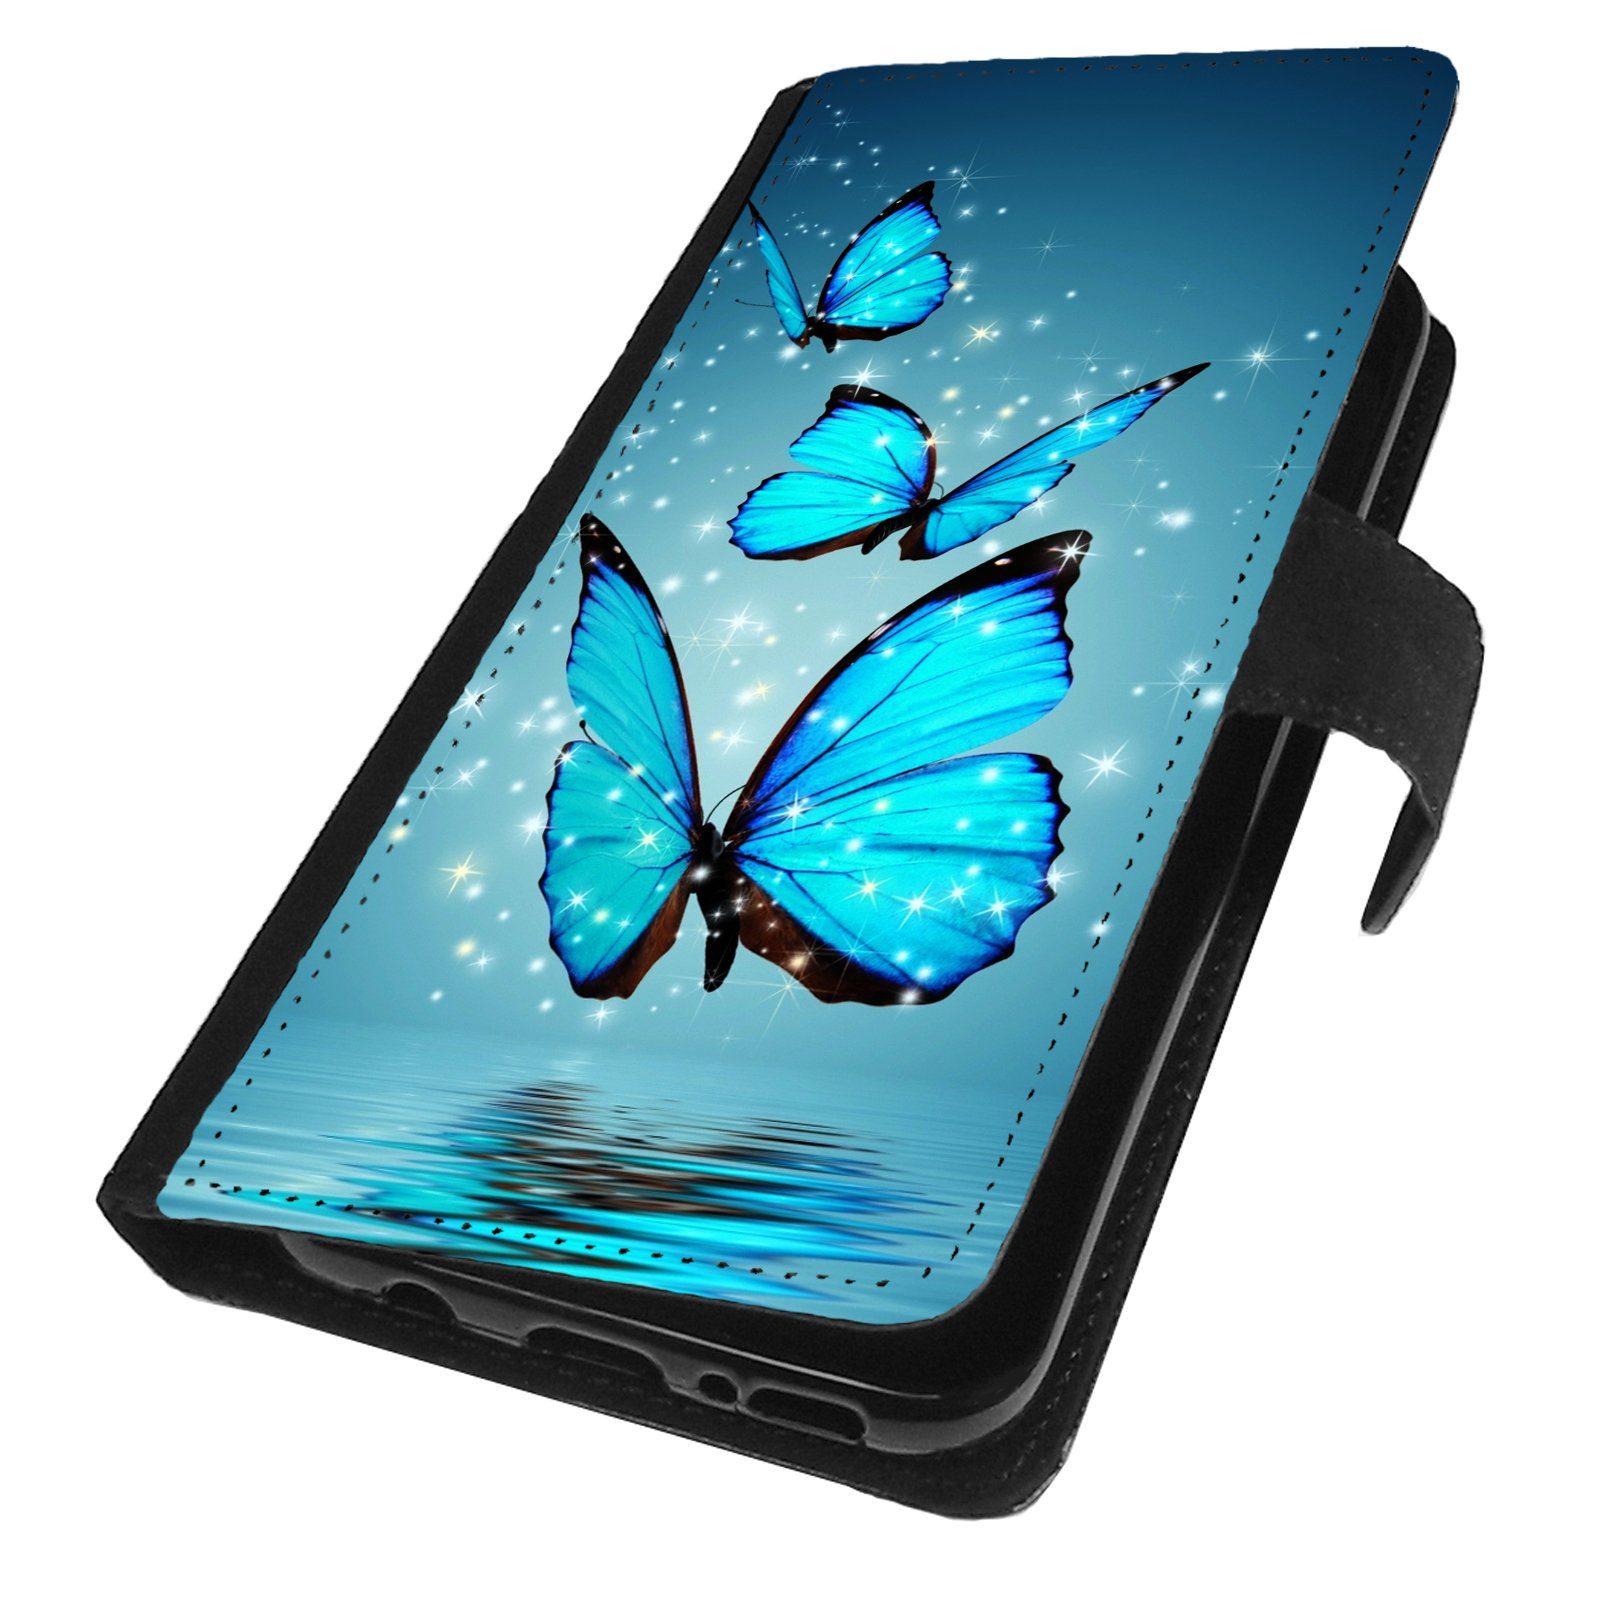 Traumhuelle Handyhülle Für Samsung Galaxy S7 / für Samsung Galaxy S7 Edge  Hülle Motiv 4, Schmetterling Handy Tasche Hülle Case Etui Cover 360 Grad  Schutz